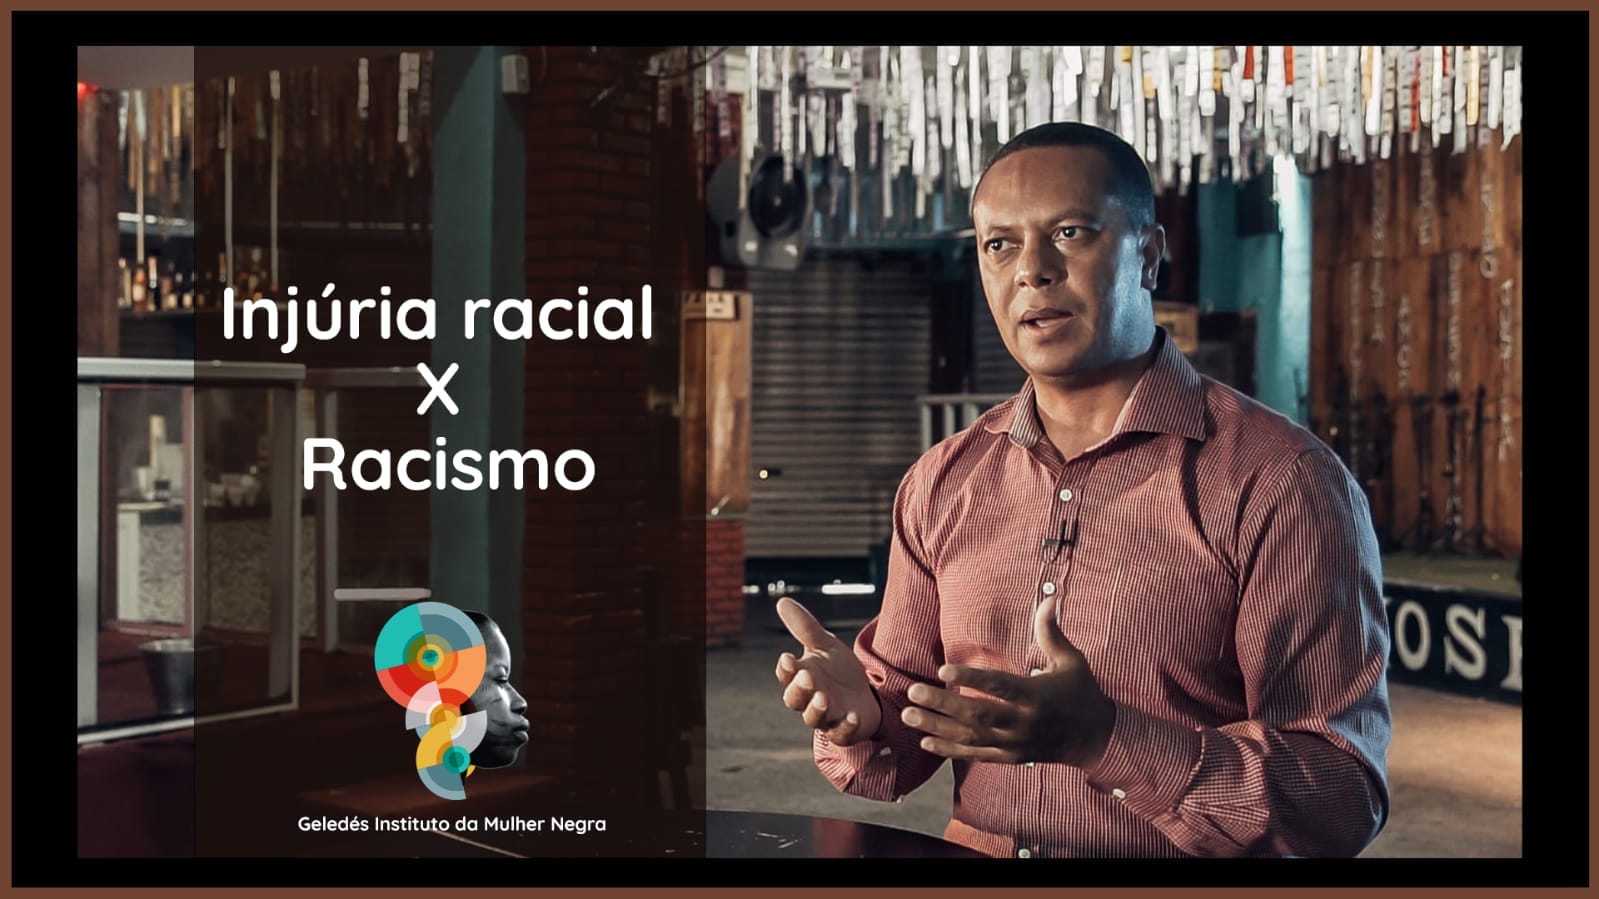 Coordenador do SOS Racismo de Geledés questiona decisões judiciais sobre racismo e injúria racial